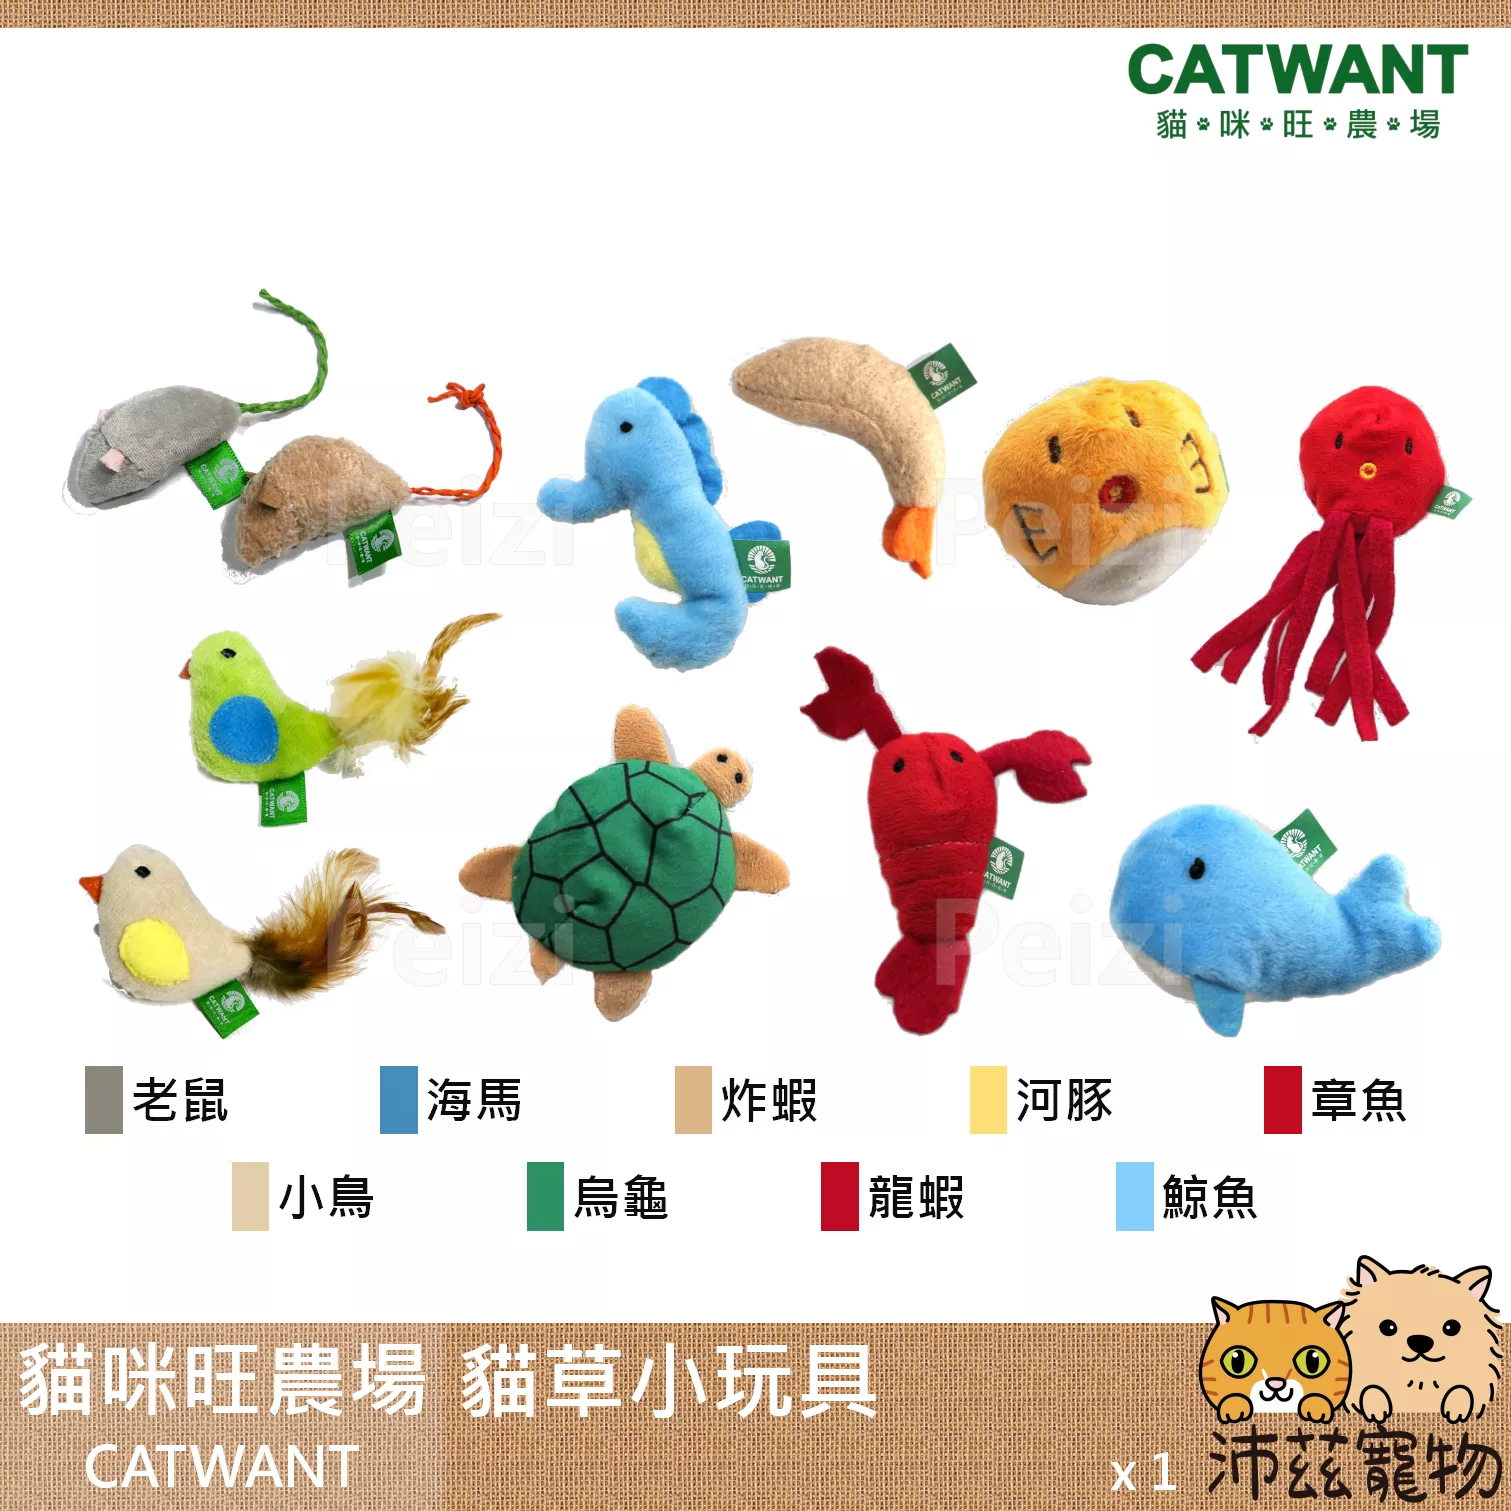 【貓咪旺農場 Catwant 貓草小玩具】貓薄荷 木天蓼 台灣 貓玩具 貓 玩具